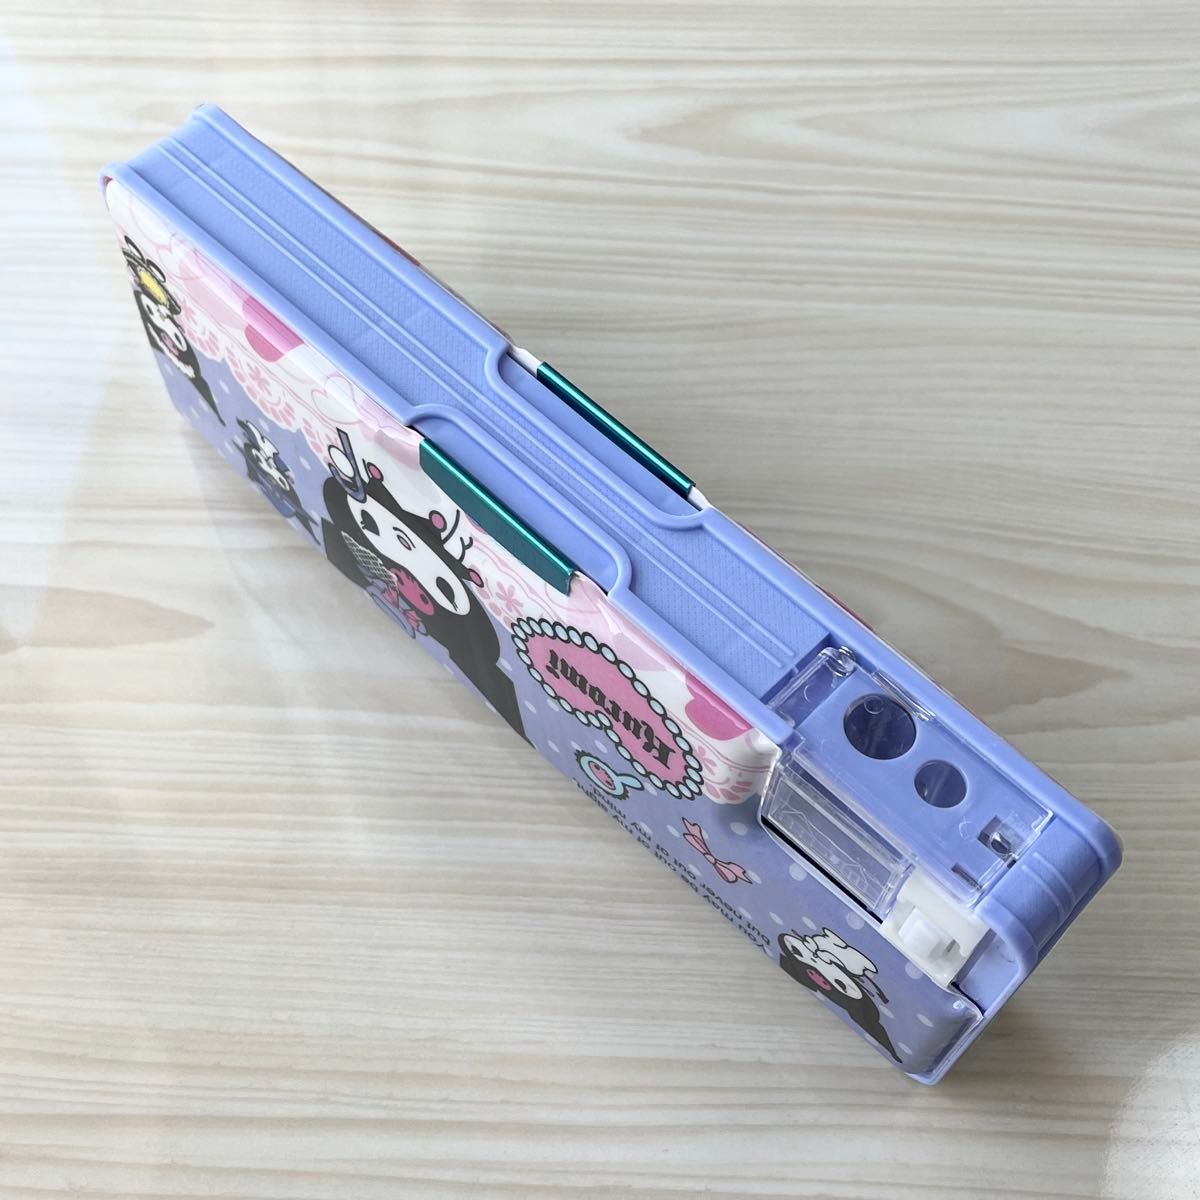 クロミちゃん 鉛筆削り付き筆箱 ペンケース サンリオ キャラクター 可愛い新学期 プレゼント